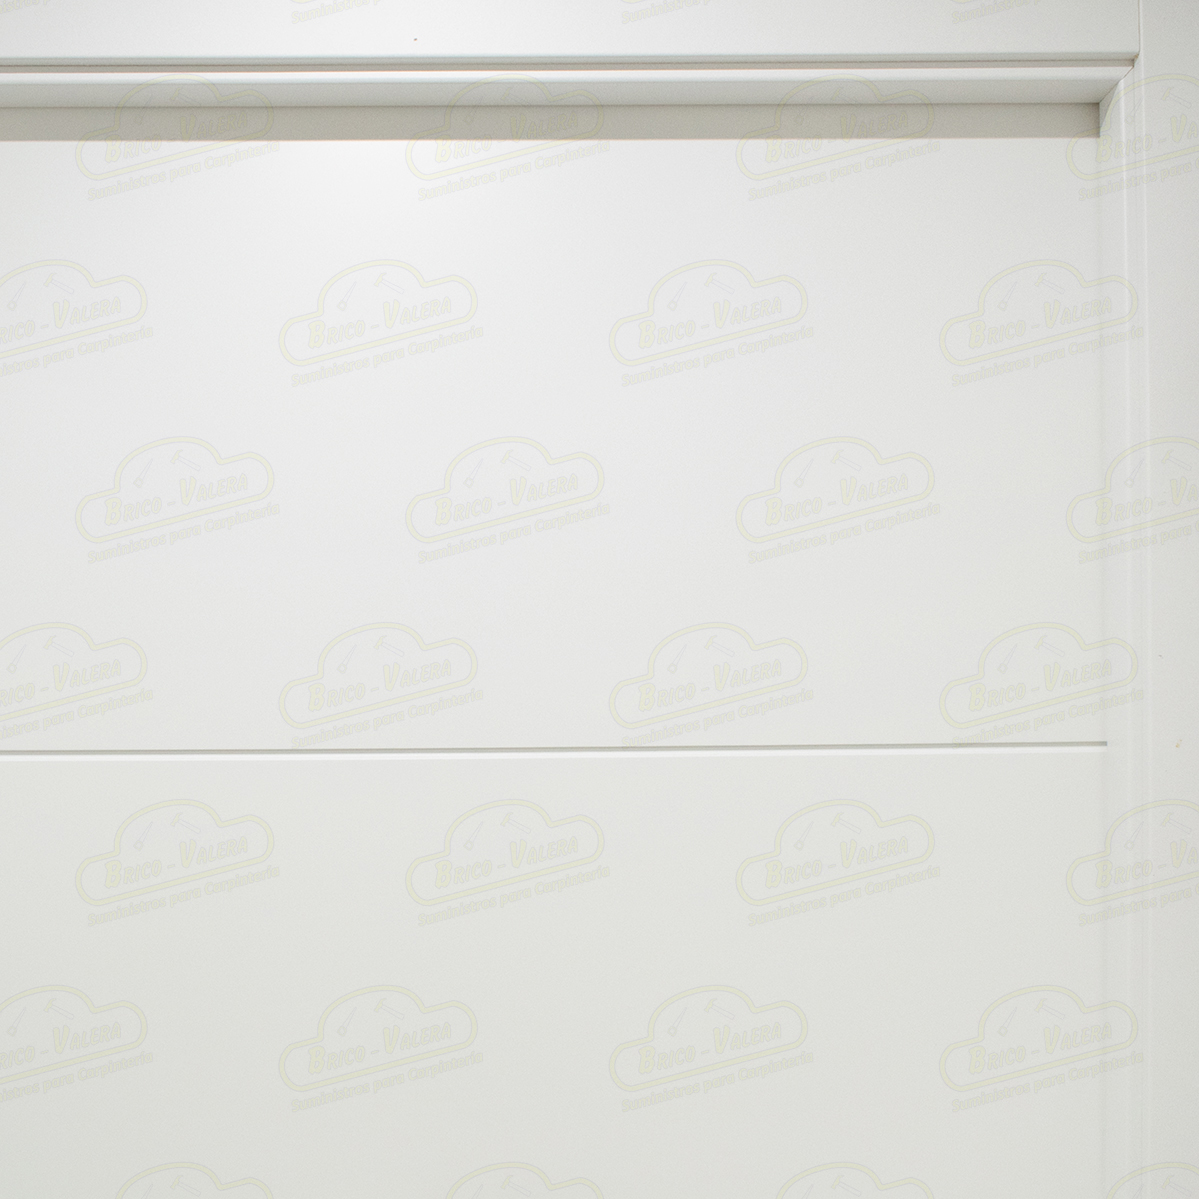 Puerta Premium PVT5-BV4 Lacada Blanca con Manillas Negras de Interior en Block (Maciza) PROMO: CRISTALES MATE GRATIS